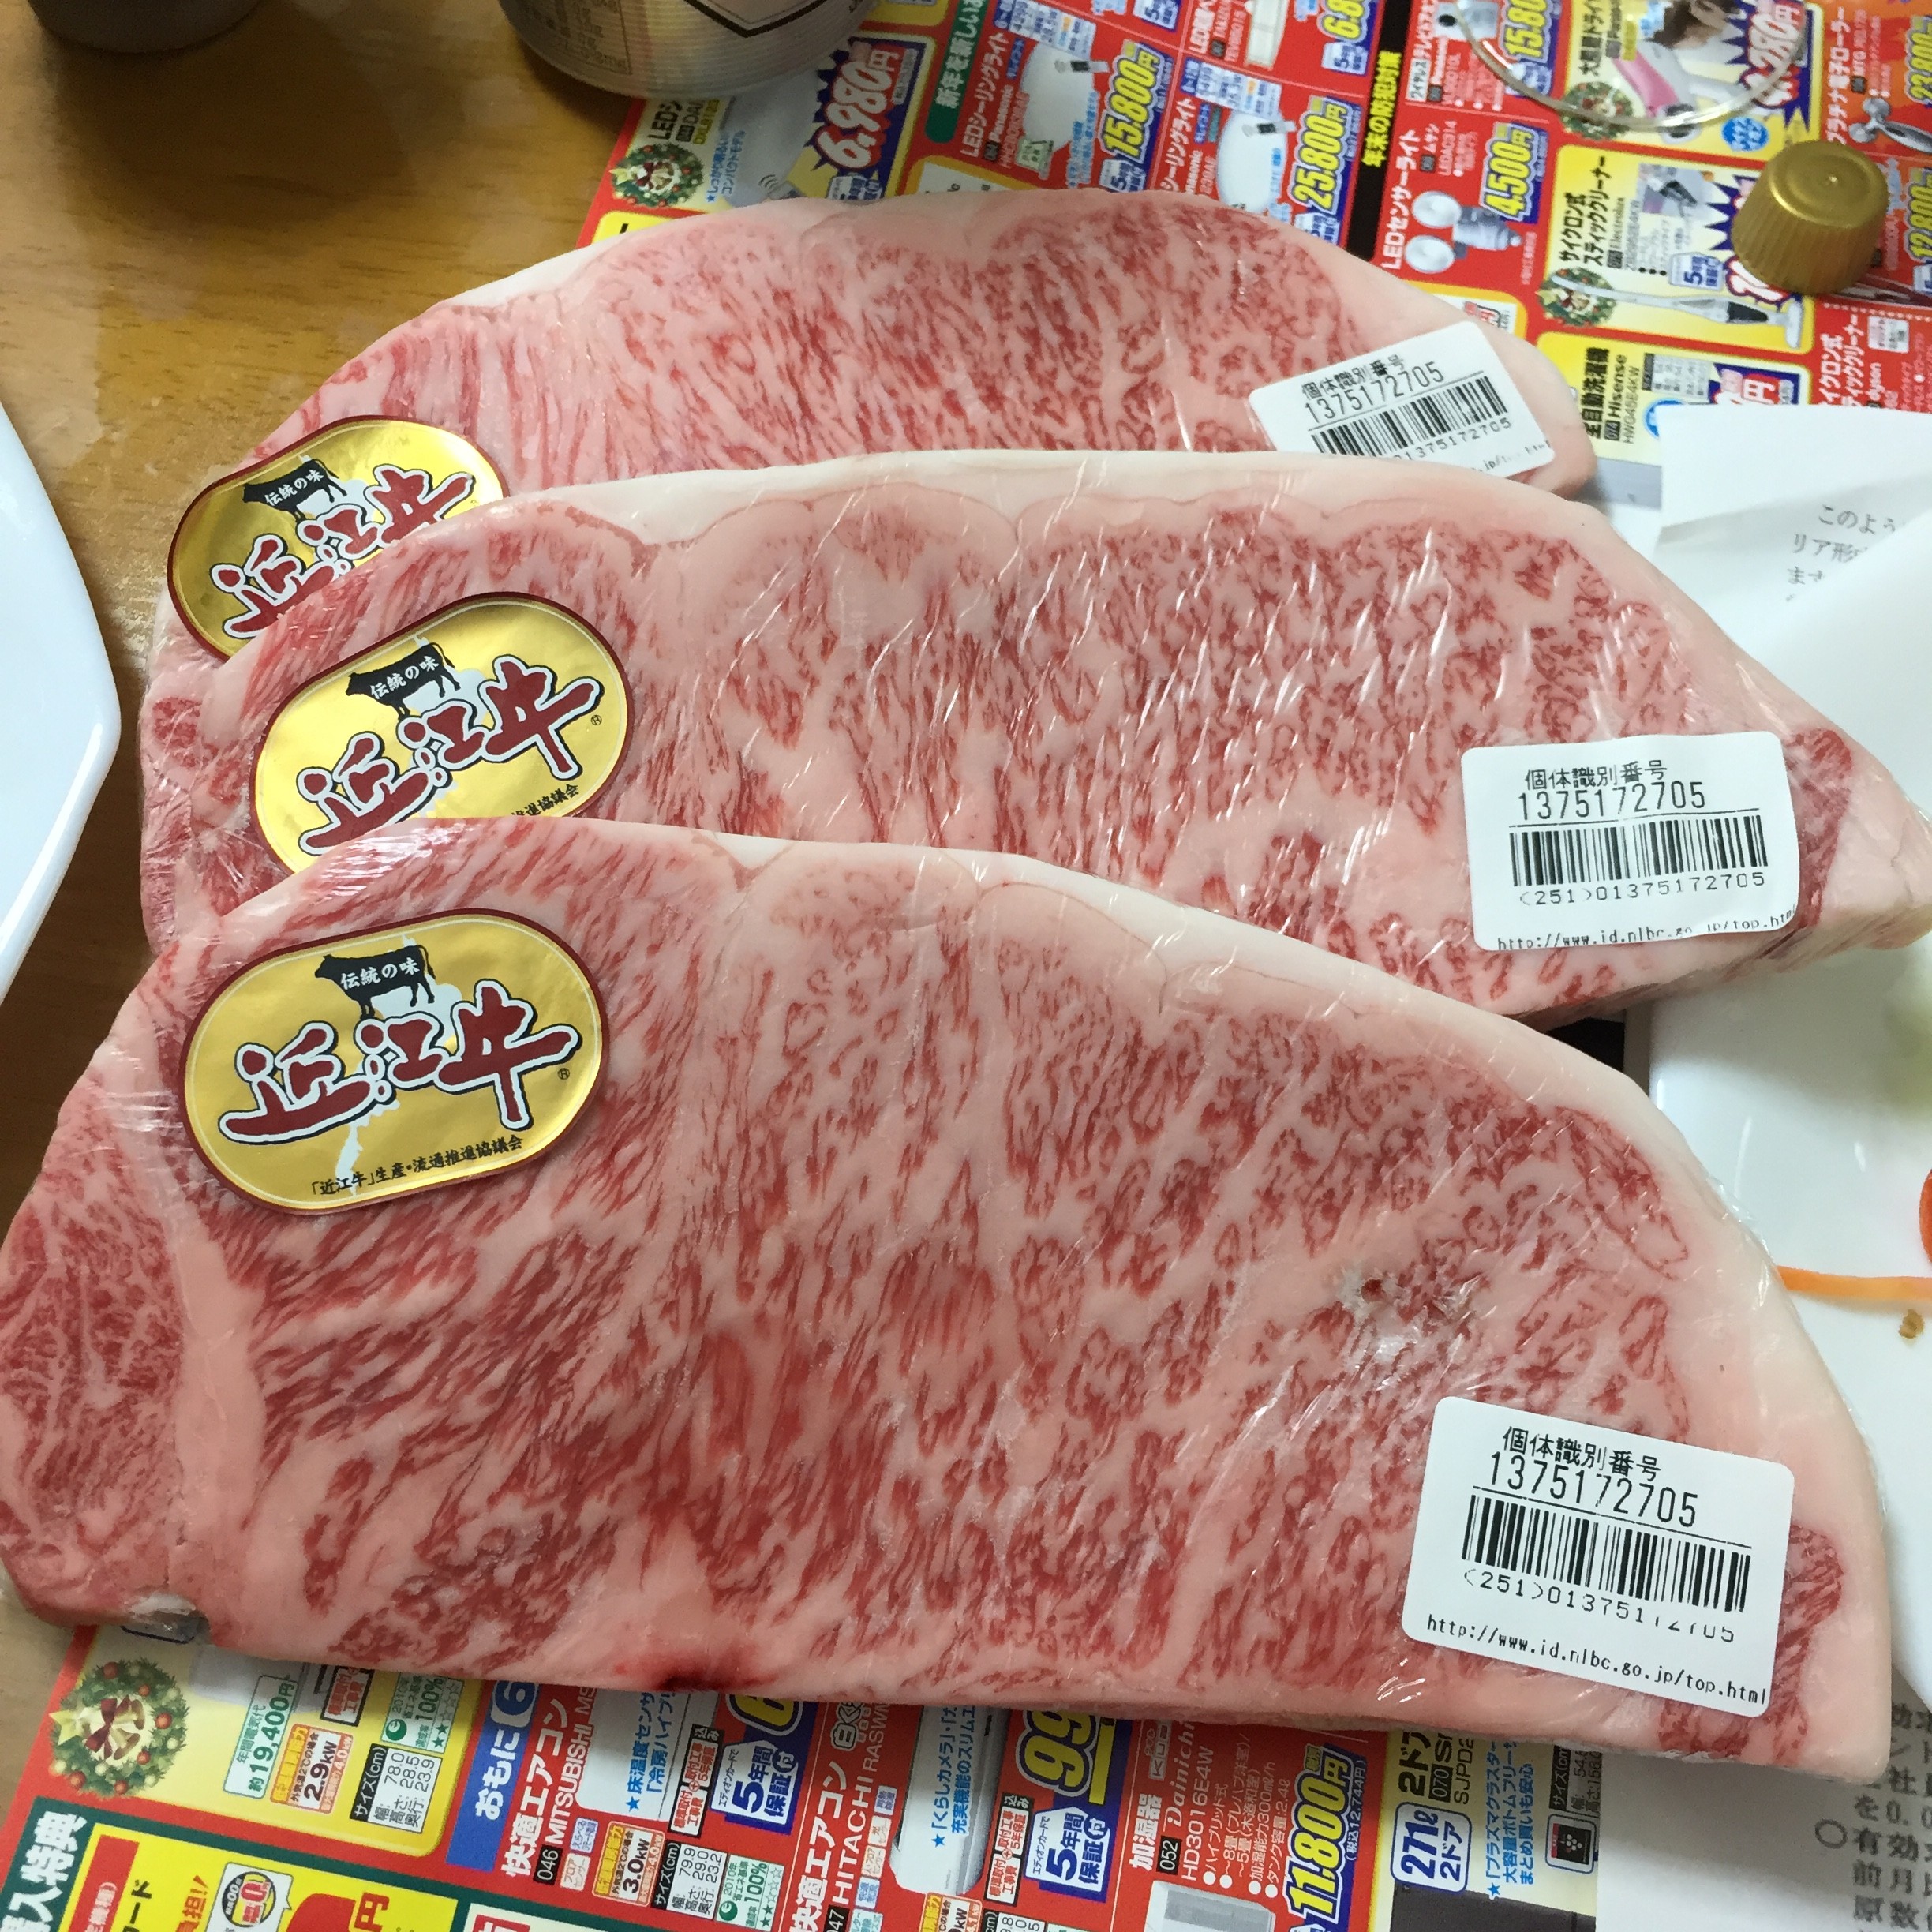 在台灣吃不到好吃牛肉 解密日本人心中最棒的和牛 Ettoday生活新聞 Ettoday新聞雲